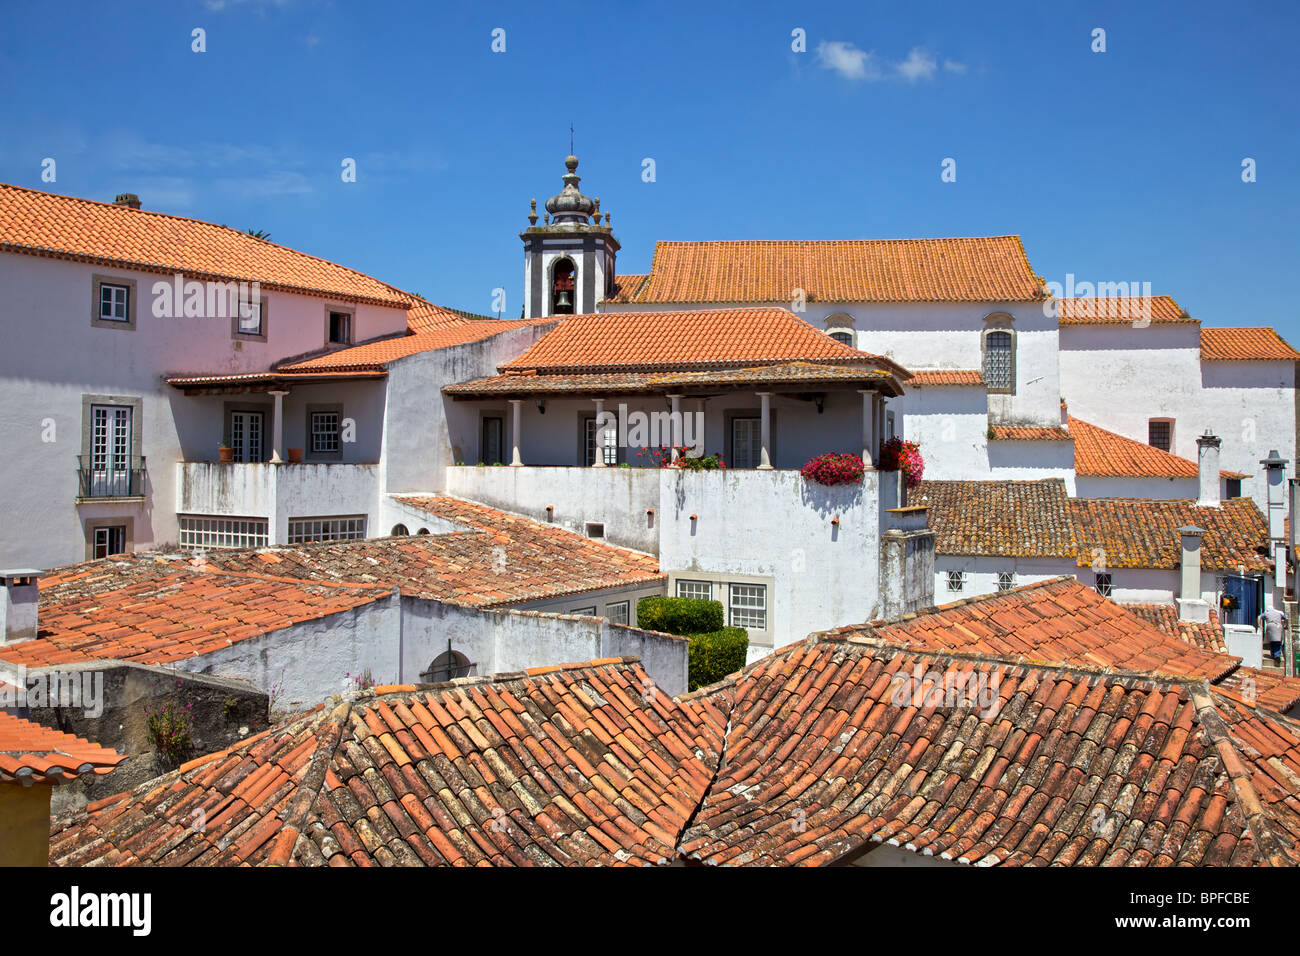 Villas blanchies à la chaux avec un toit en terre cuite dans les remparts du village médiéval d'Obidos, Portugal Banque D'Images